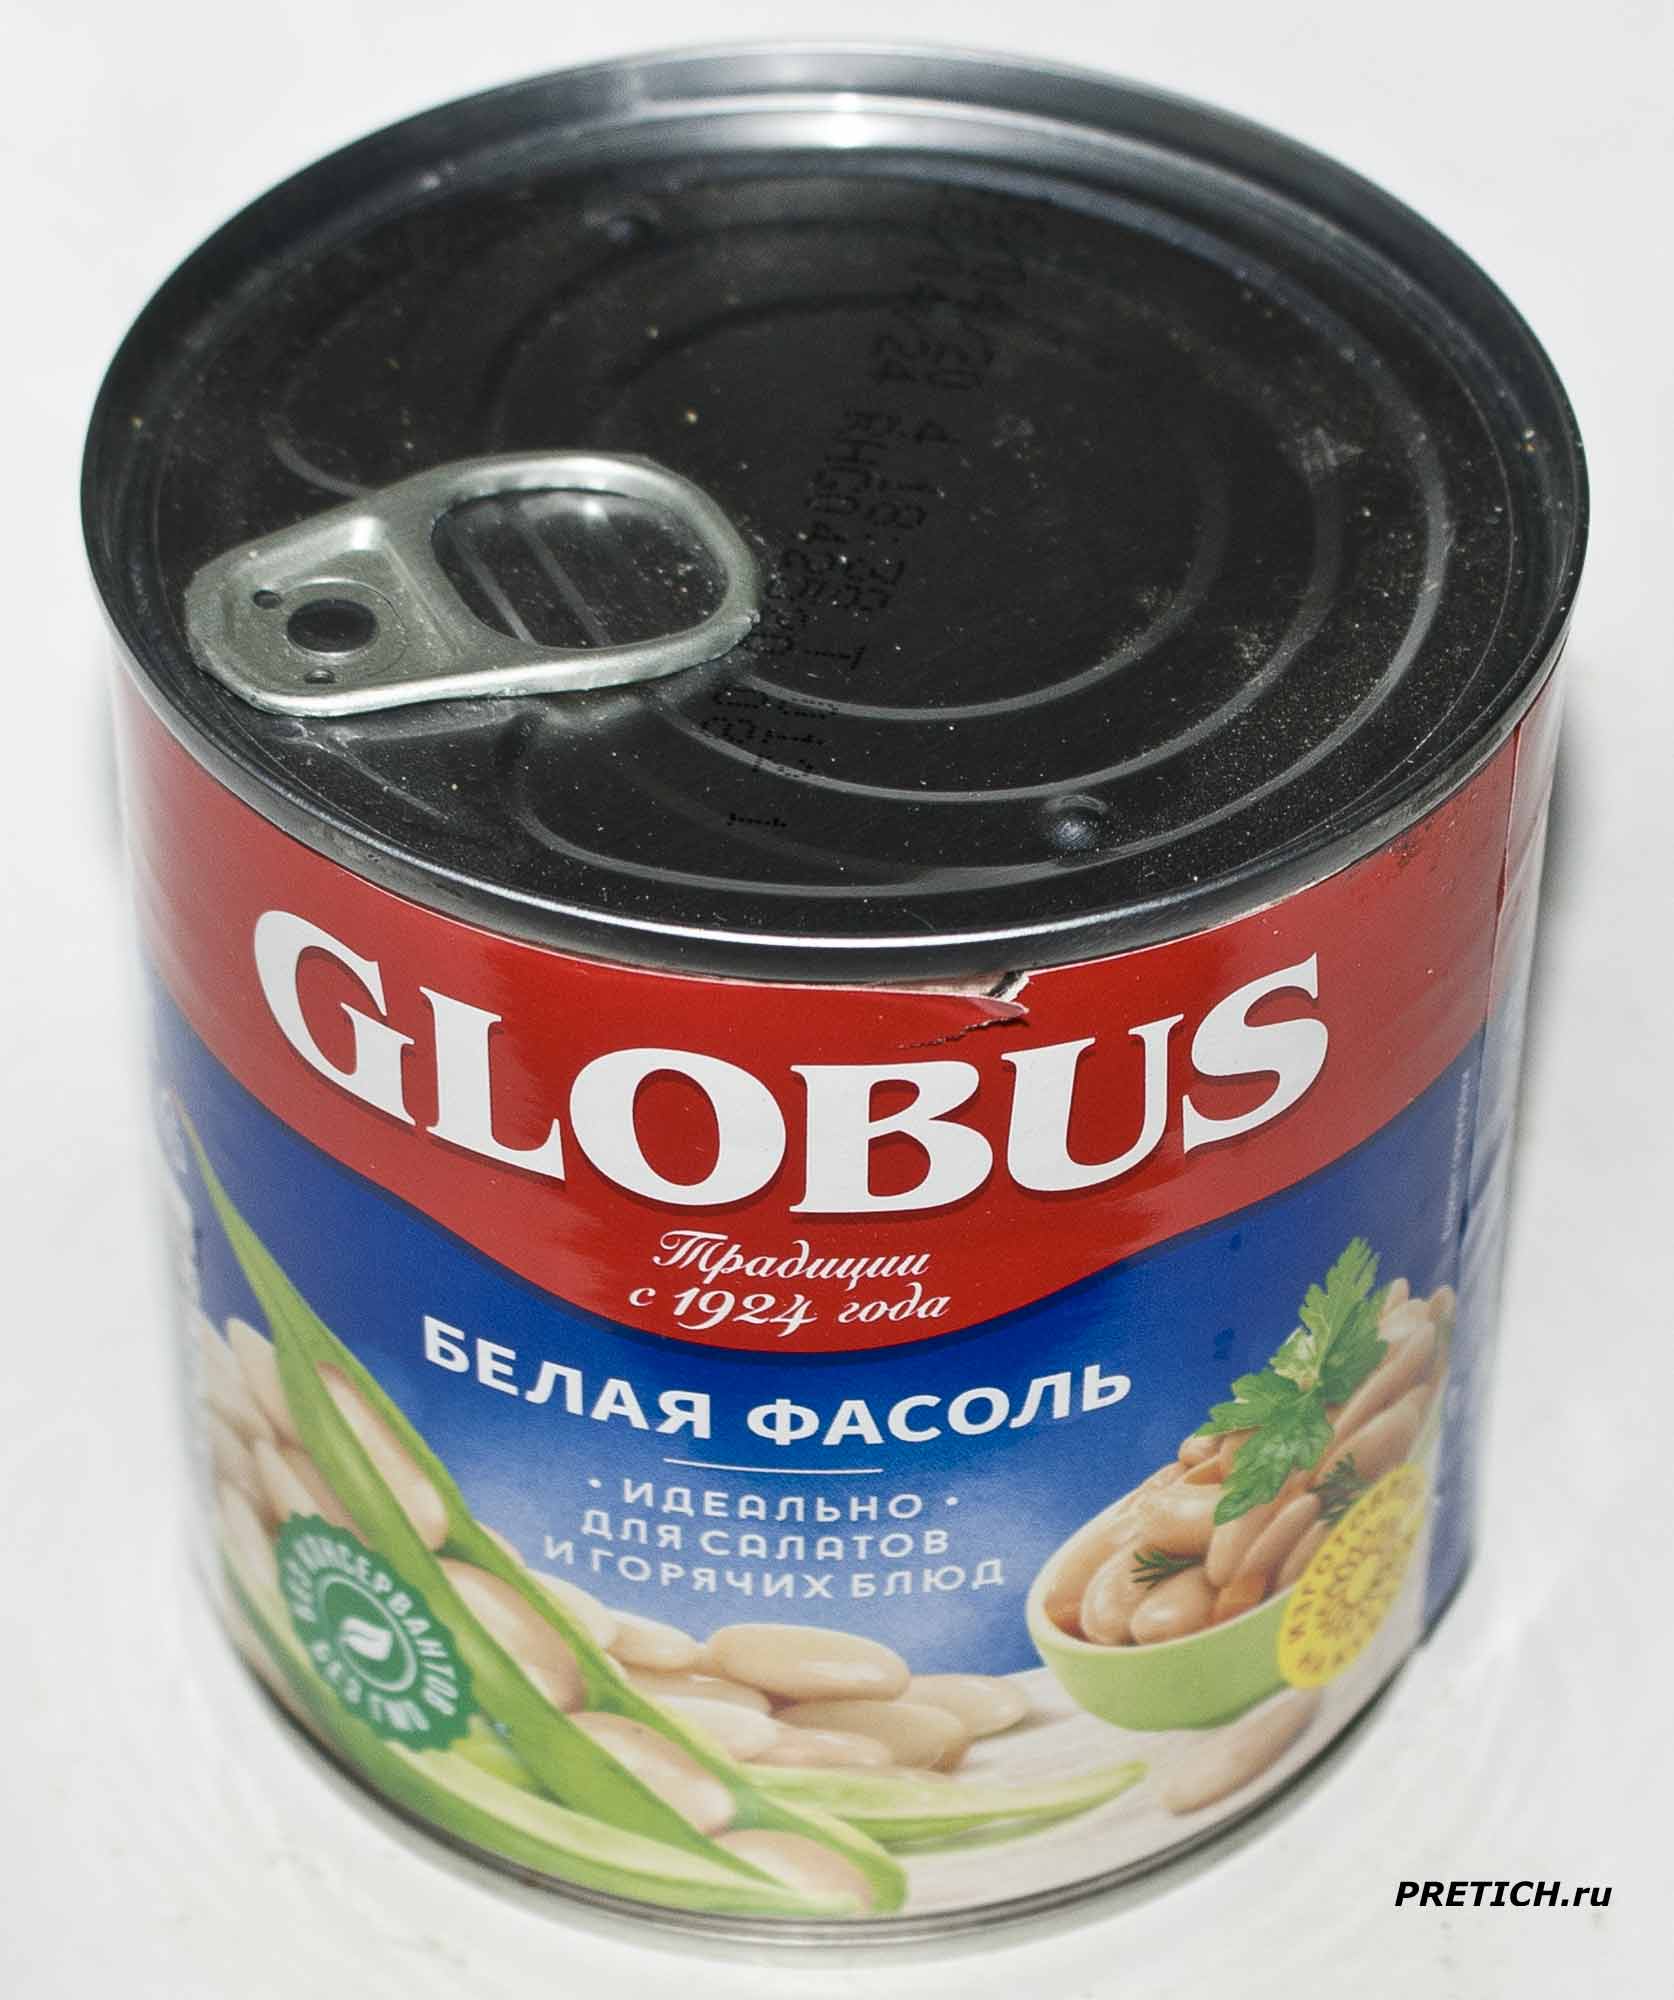 Отзыв и описание Globus Белая фасоль сделано на Кубани